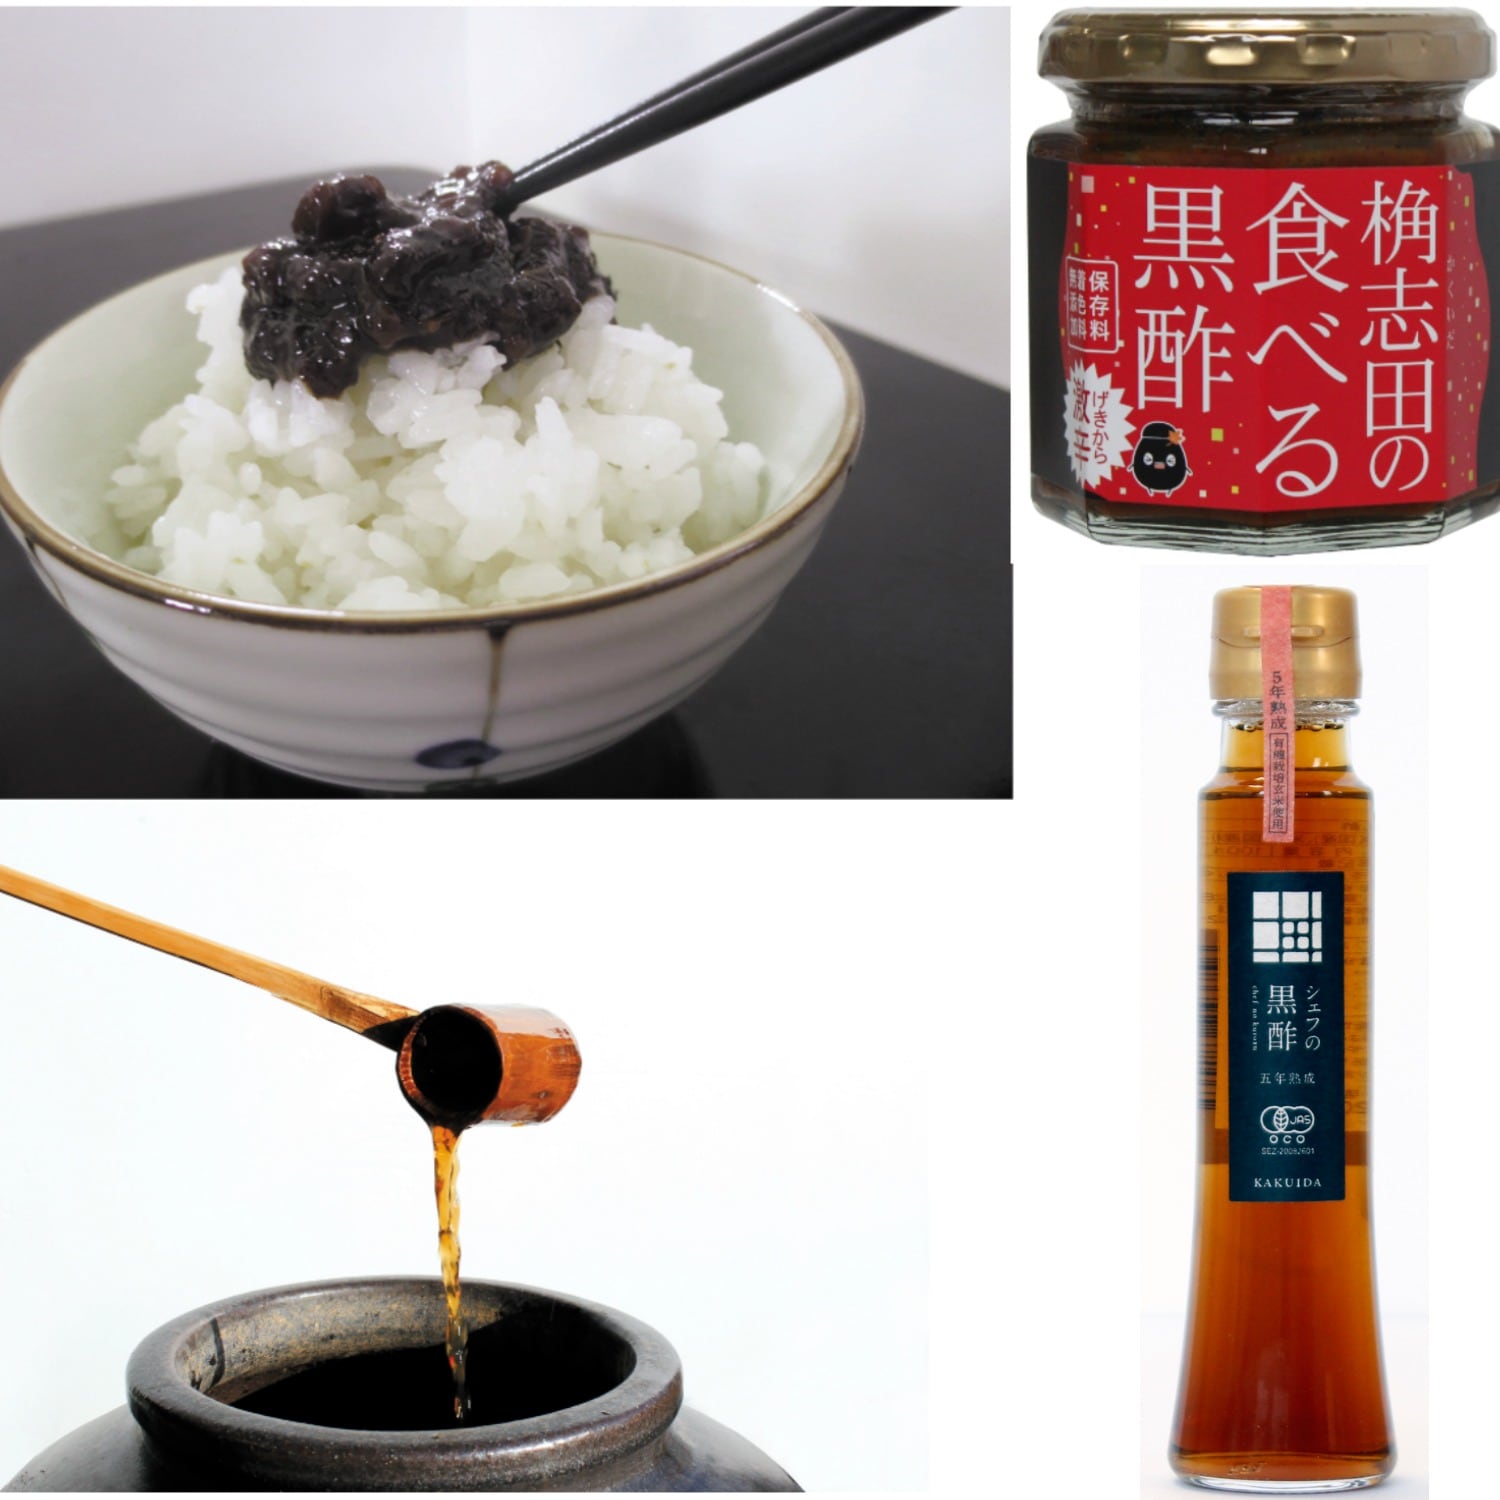 【ベルメゾン】シェフの黒酢&食べる黒酢セット